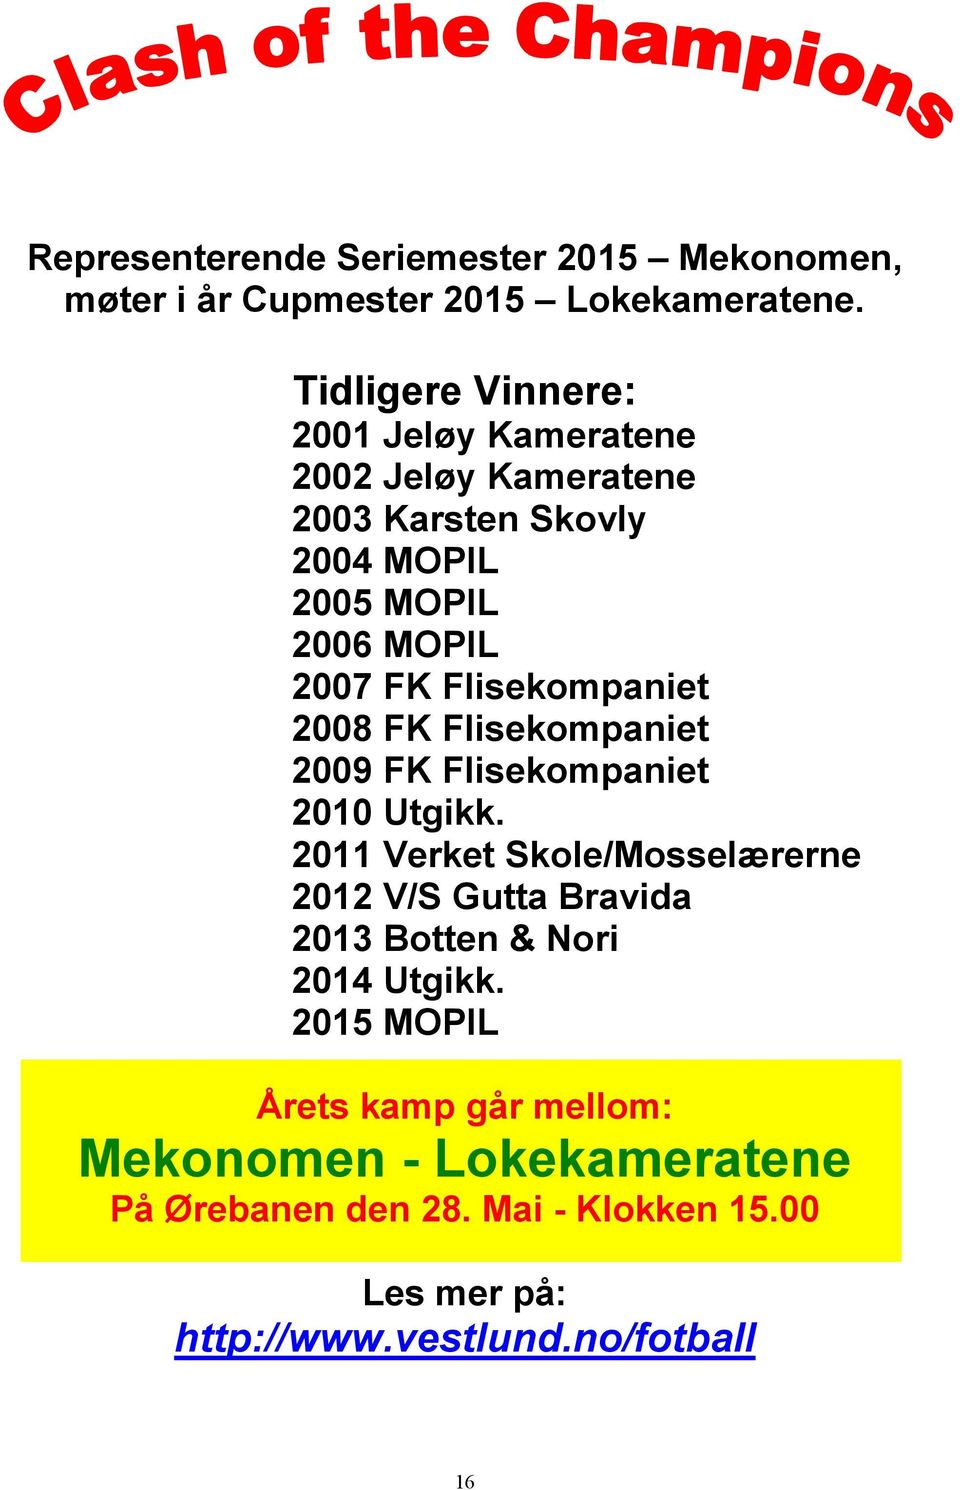 Flisekompaniet 2008 FK Flisekompaniet 2009 FK Flisekompaniet 2010 Utgikk.